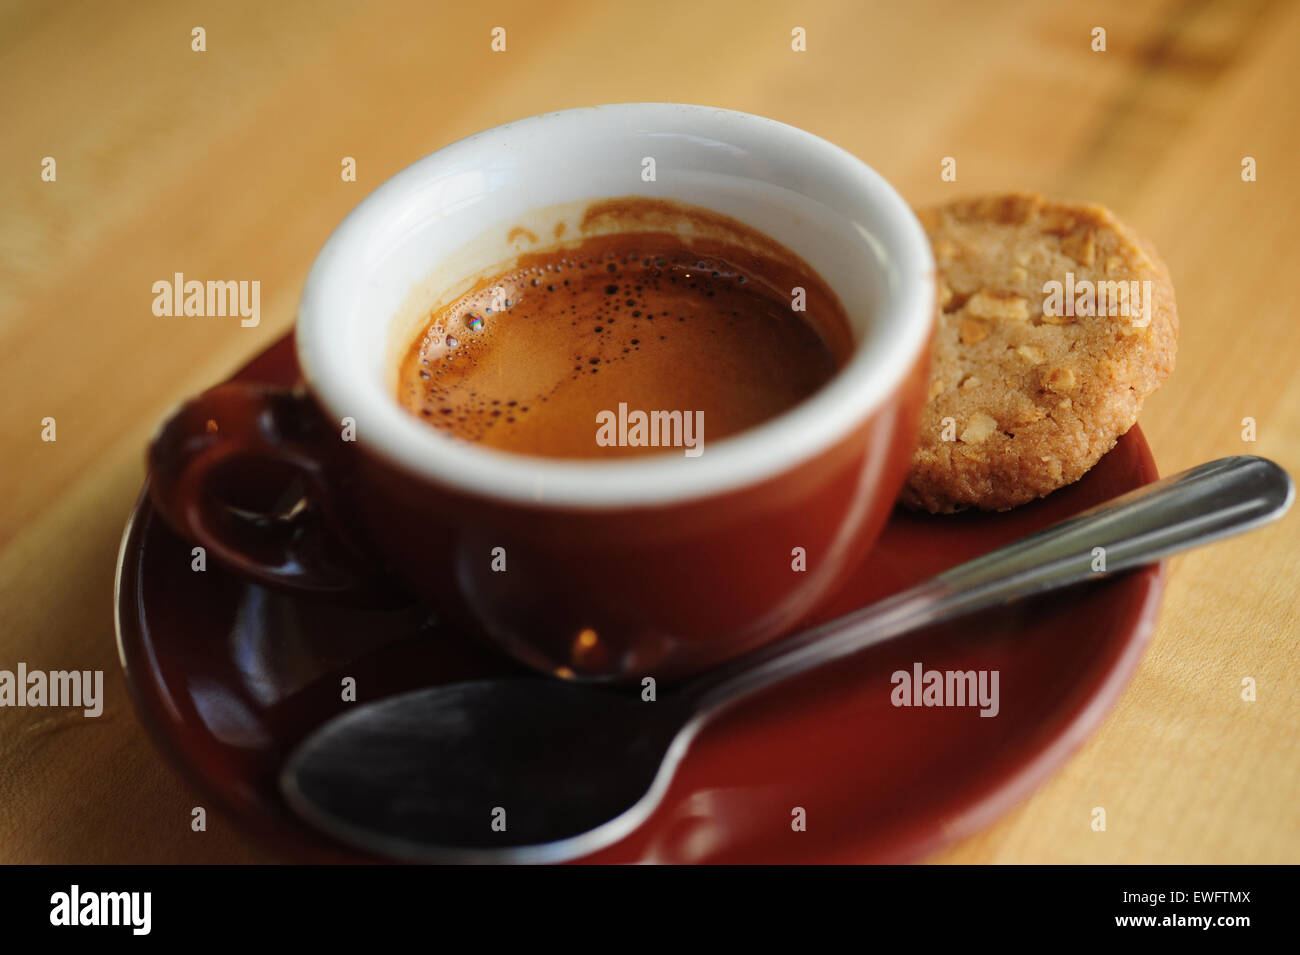 Lebensmittel, Kaffee Cafe Espresso Getränke serviert in einer Demitasse Keramik Tasse mit Cookie auf der Seite Stockfoto